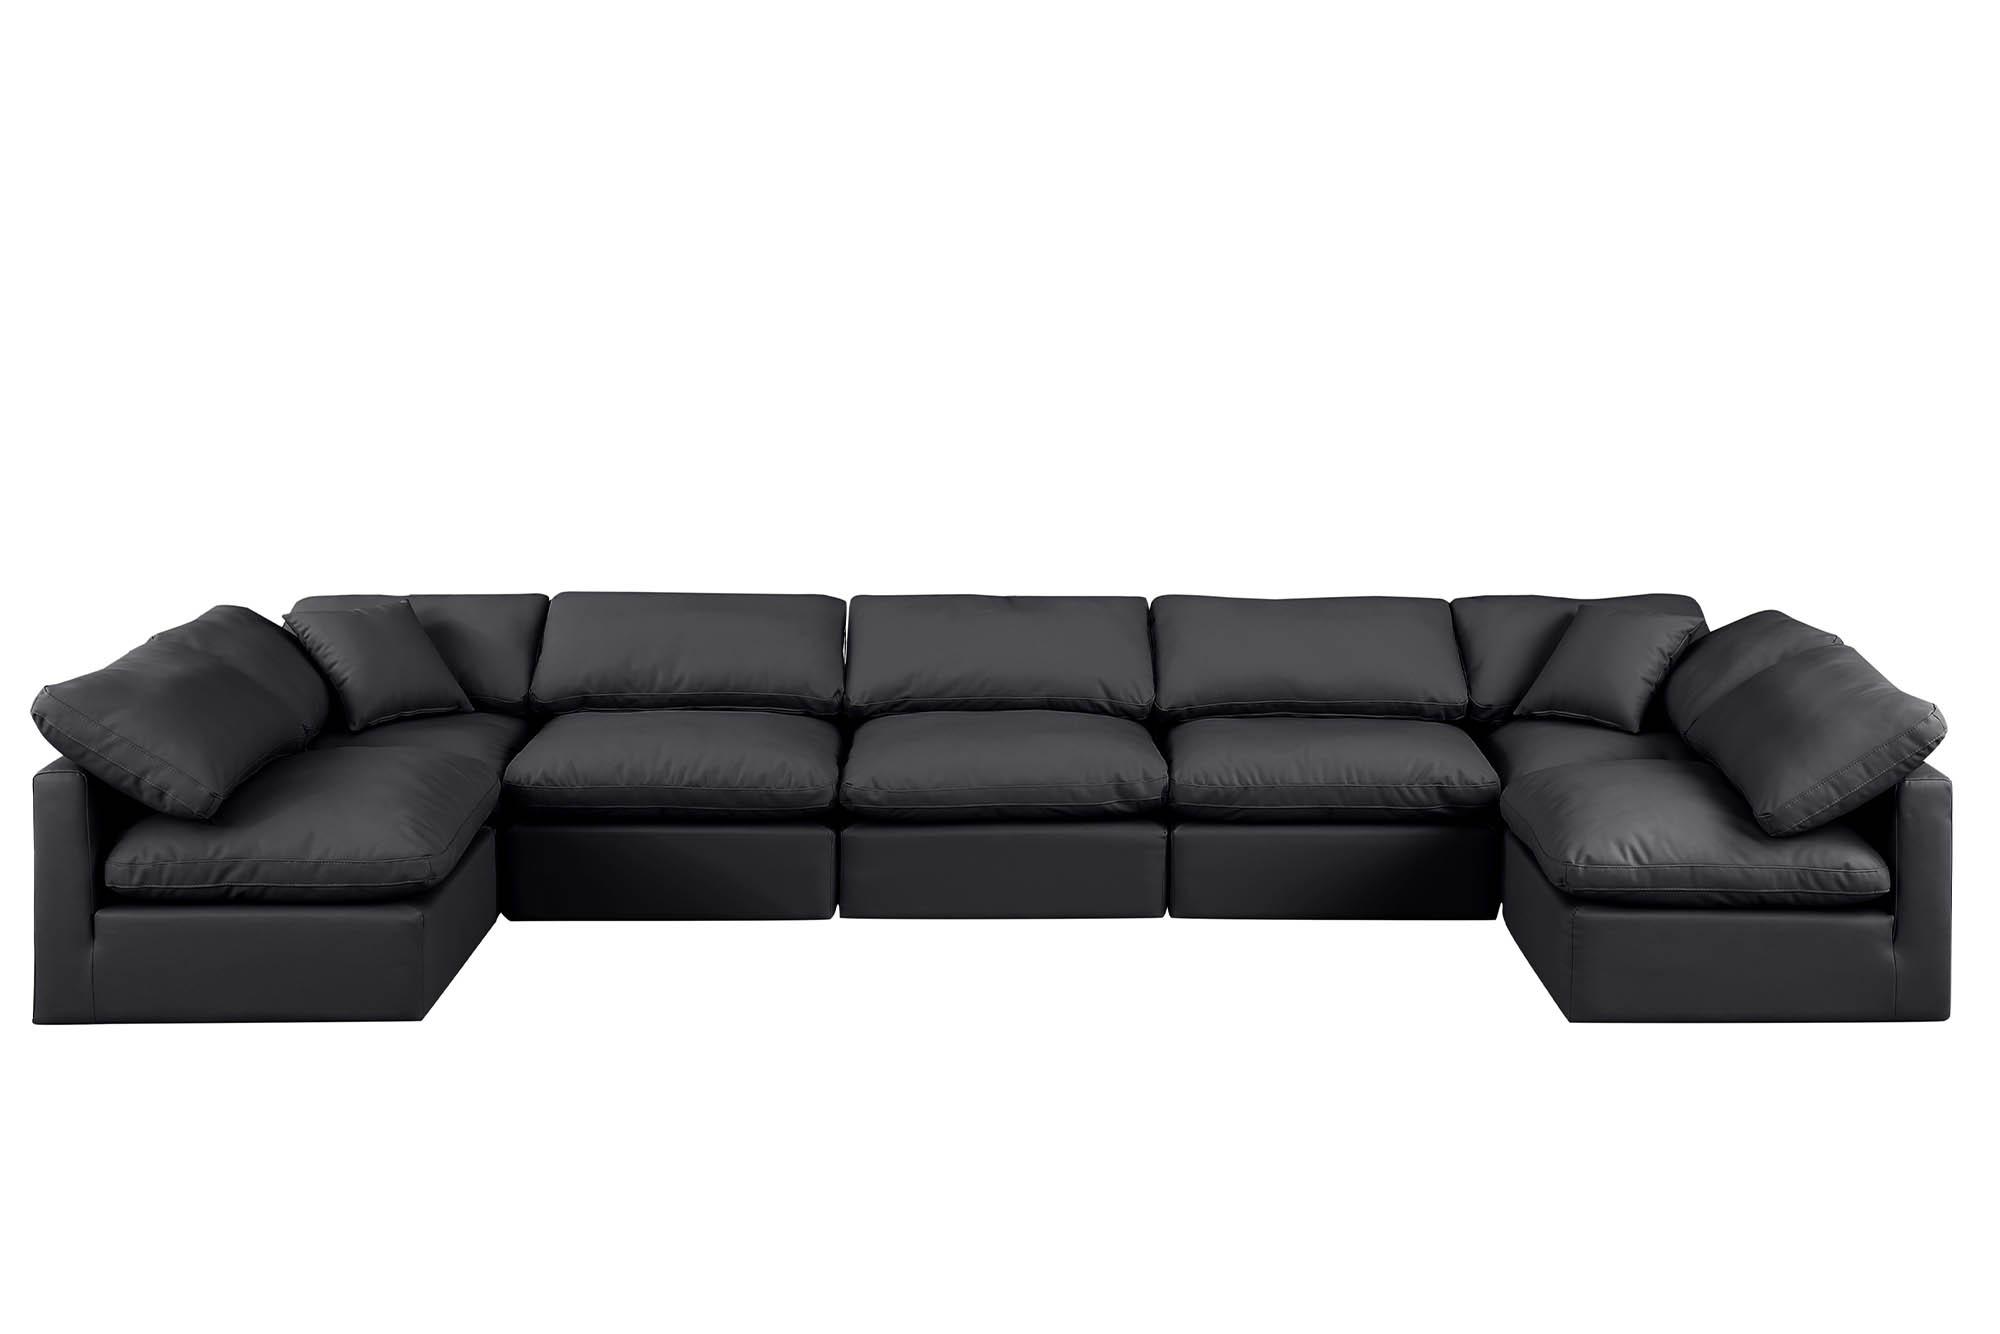 

    
Meridian Furniture INDULGE 146Black-Sec7B Modular Sectional Sofa Black 146Black-Sec7B
